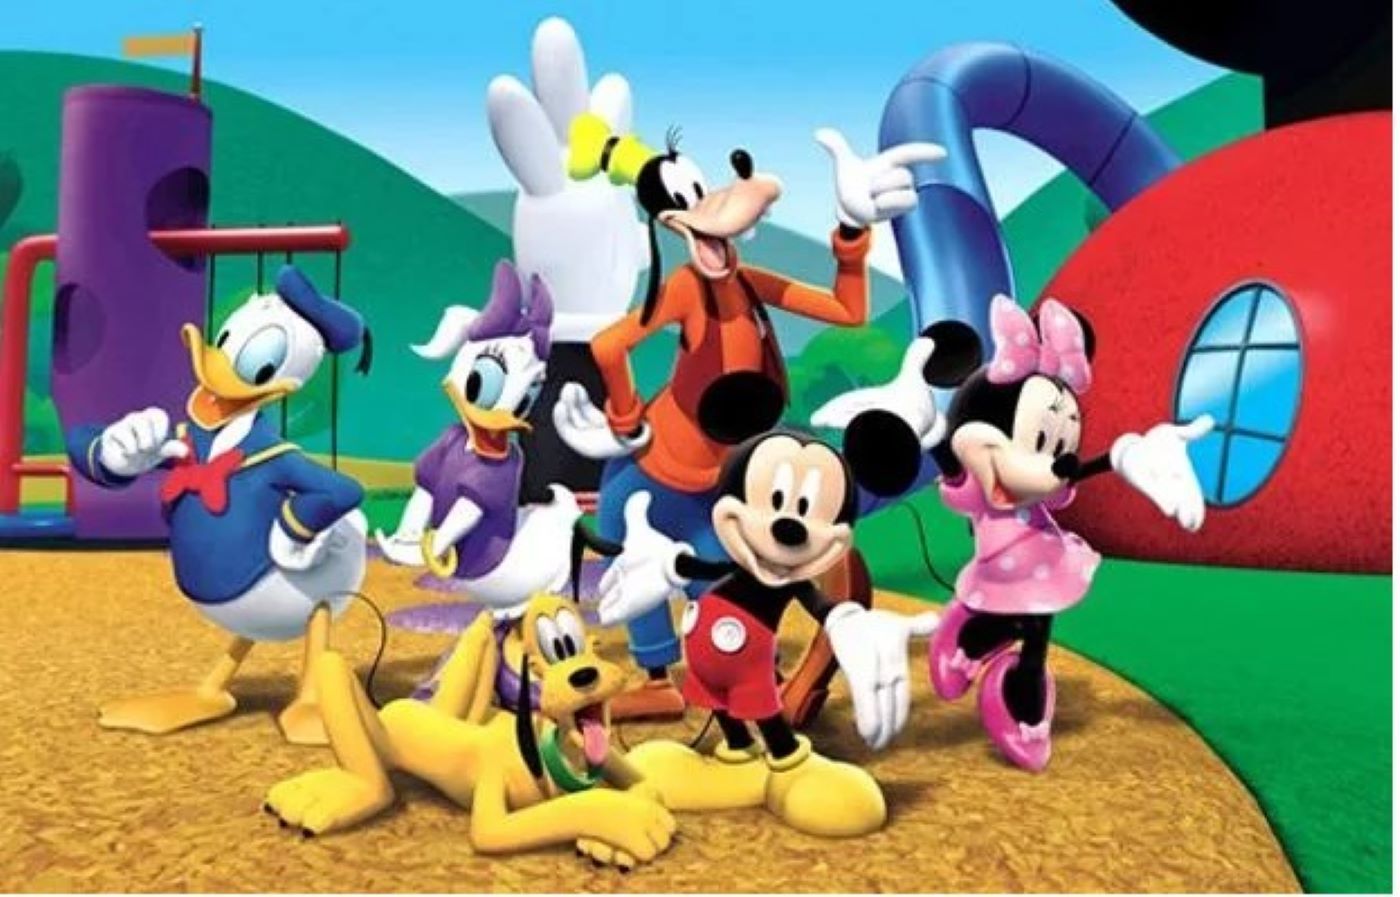 Daisy Minnie Mickey Pluto Donald Goofy